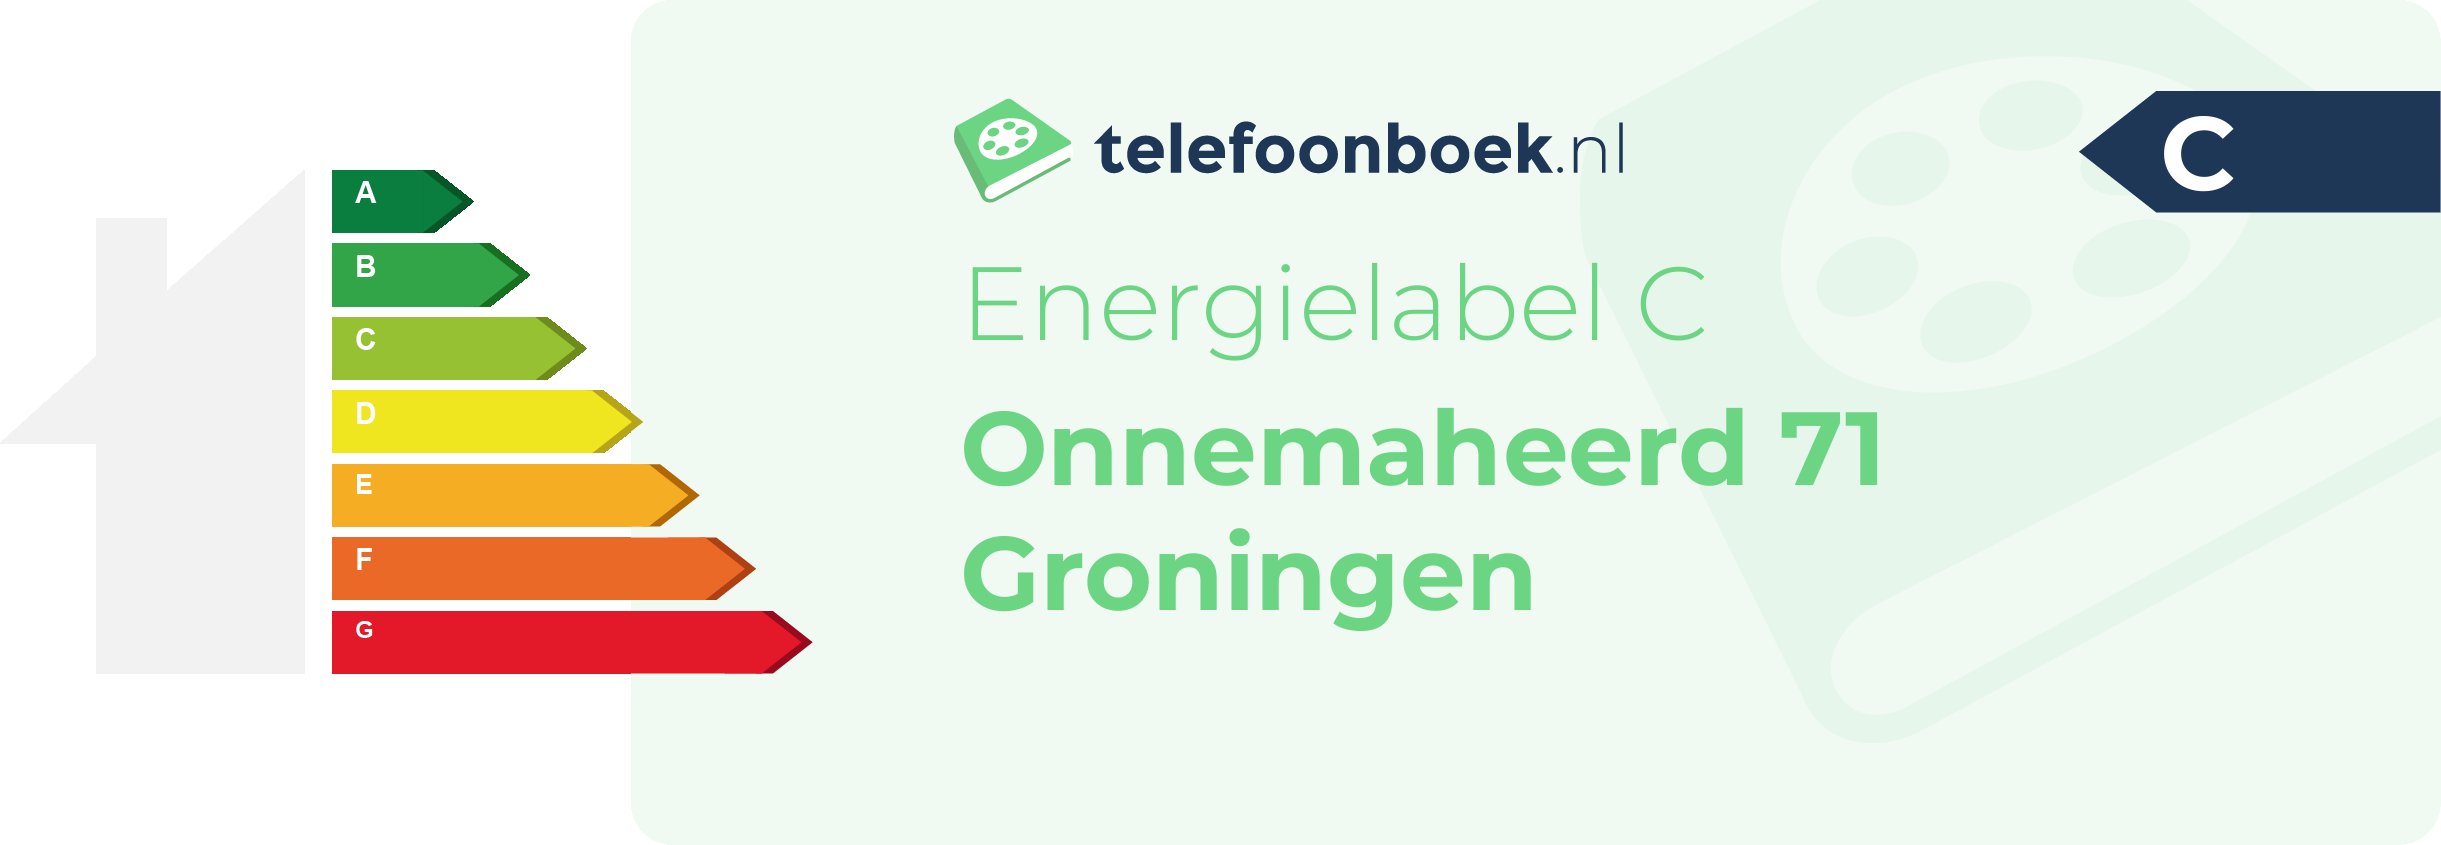 Energielabel Onnemaheerd 71 Groningen